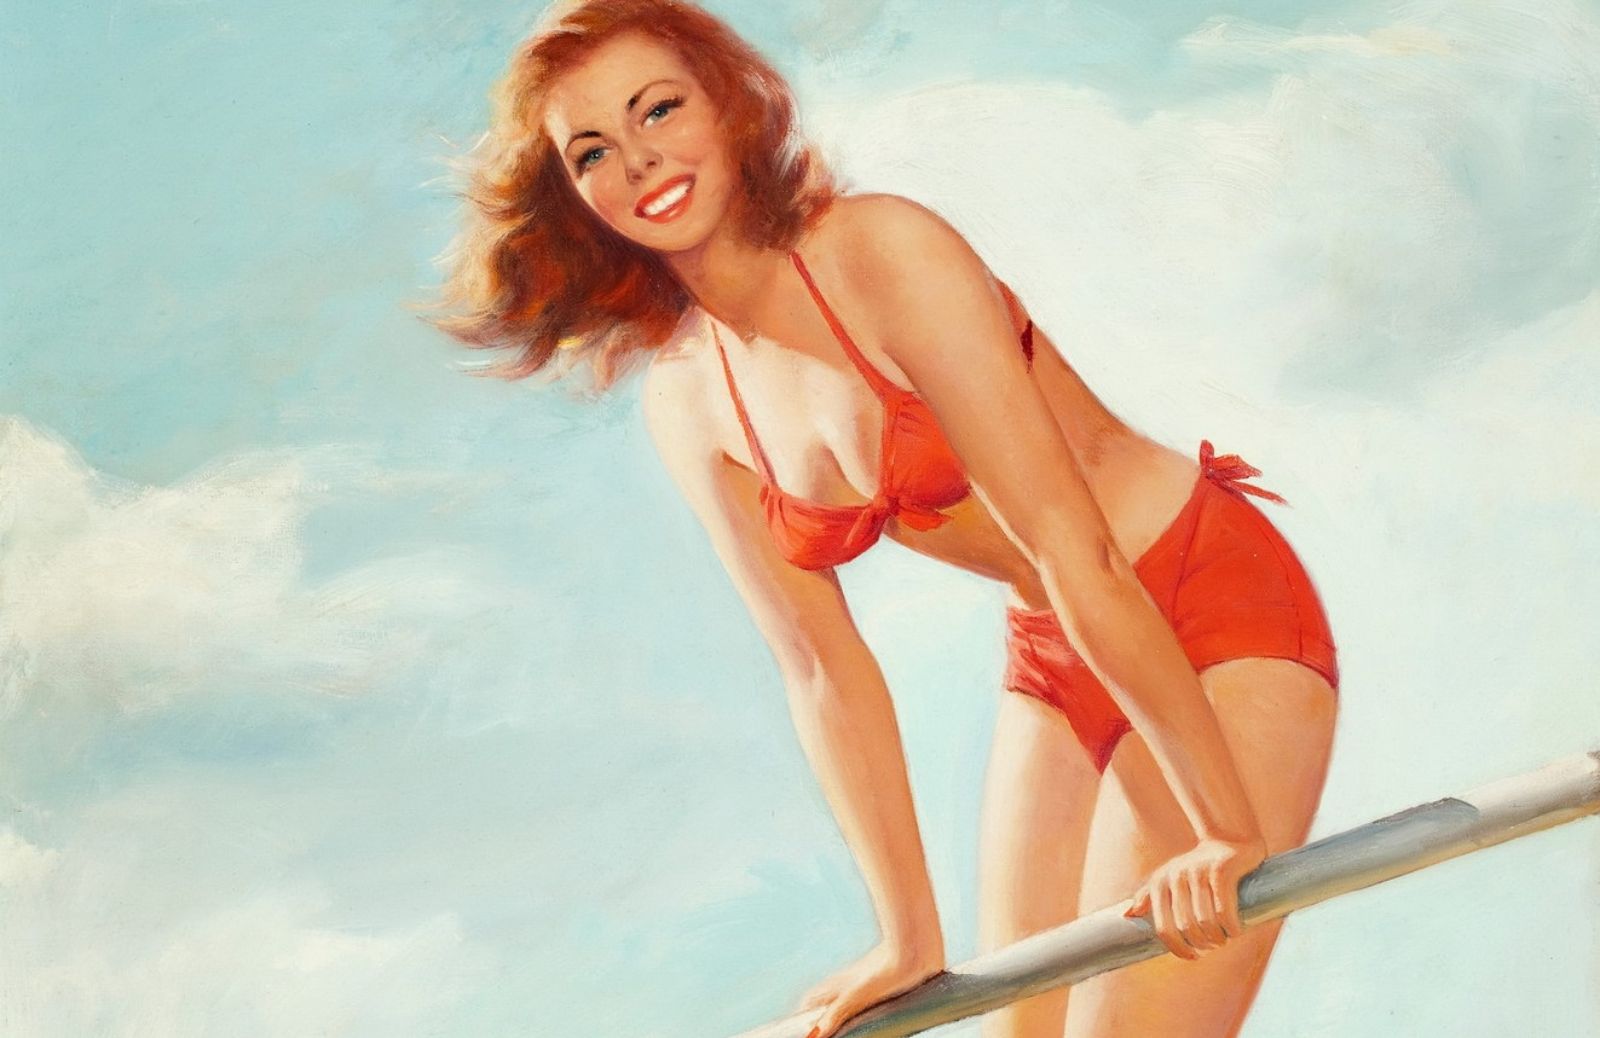 Storia del costume da bagno: anni '50, il bikini delle pin up